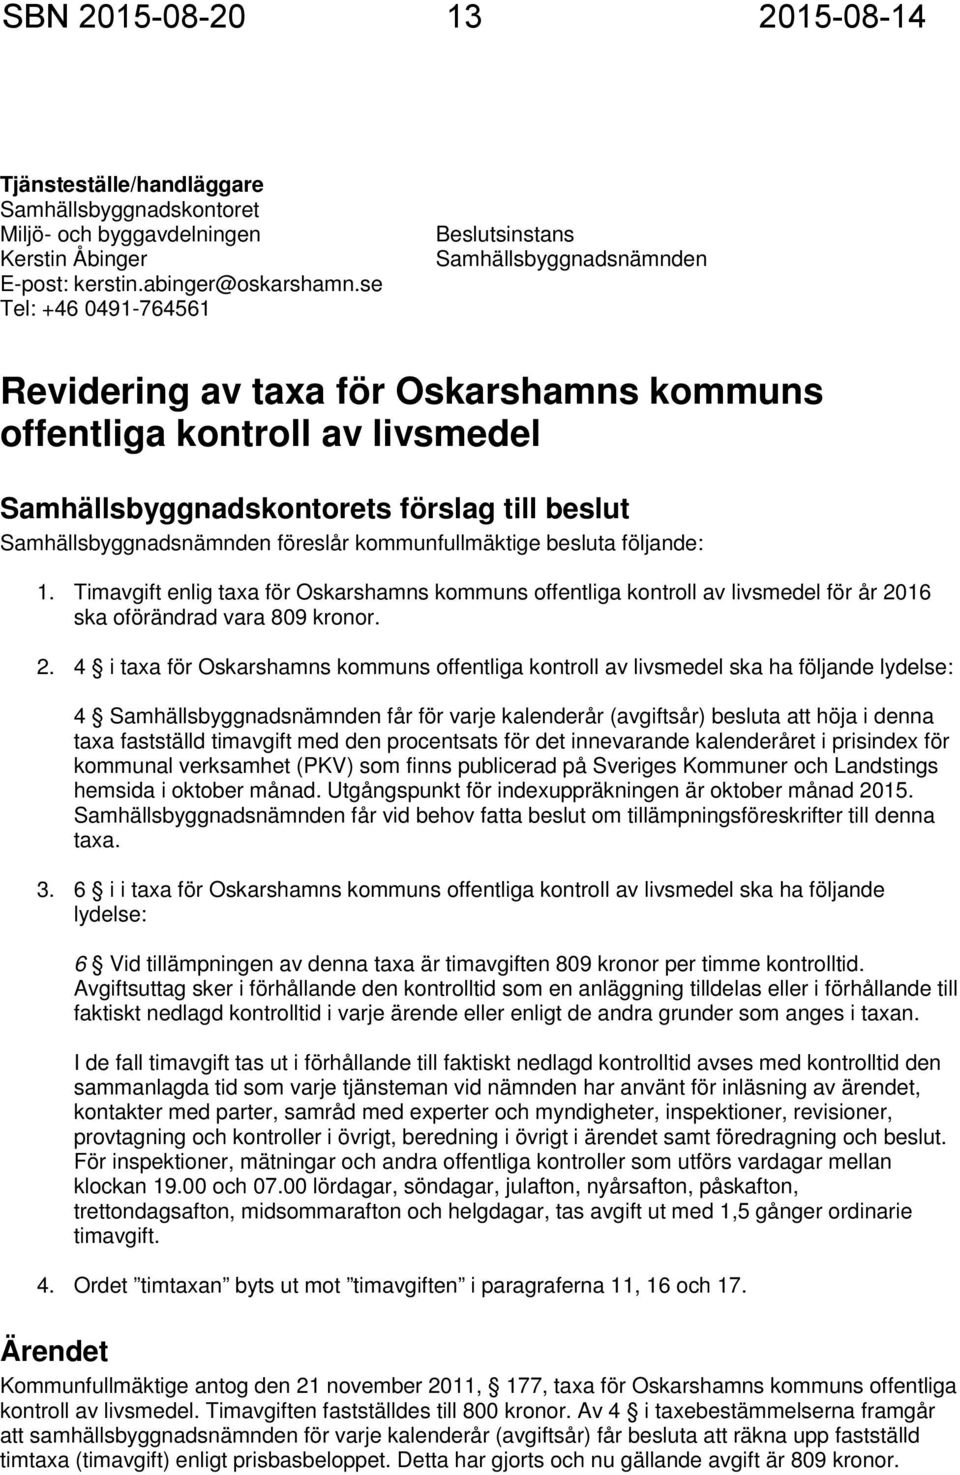 Samhällsbyggnadsnämnden föreslår kommunfullmäktige besluta följande: 1. Timavgift enlig taxa för Oskarshamns kommuns offentliga kontroll av livsmedel för år 20